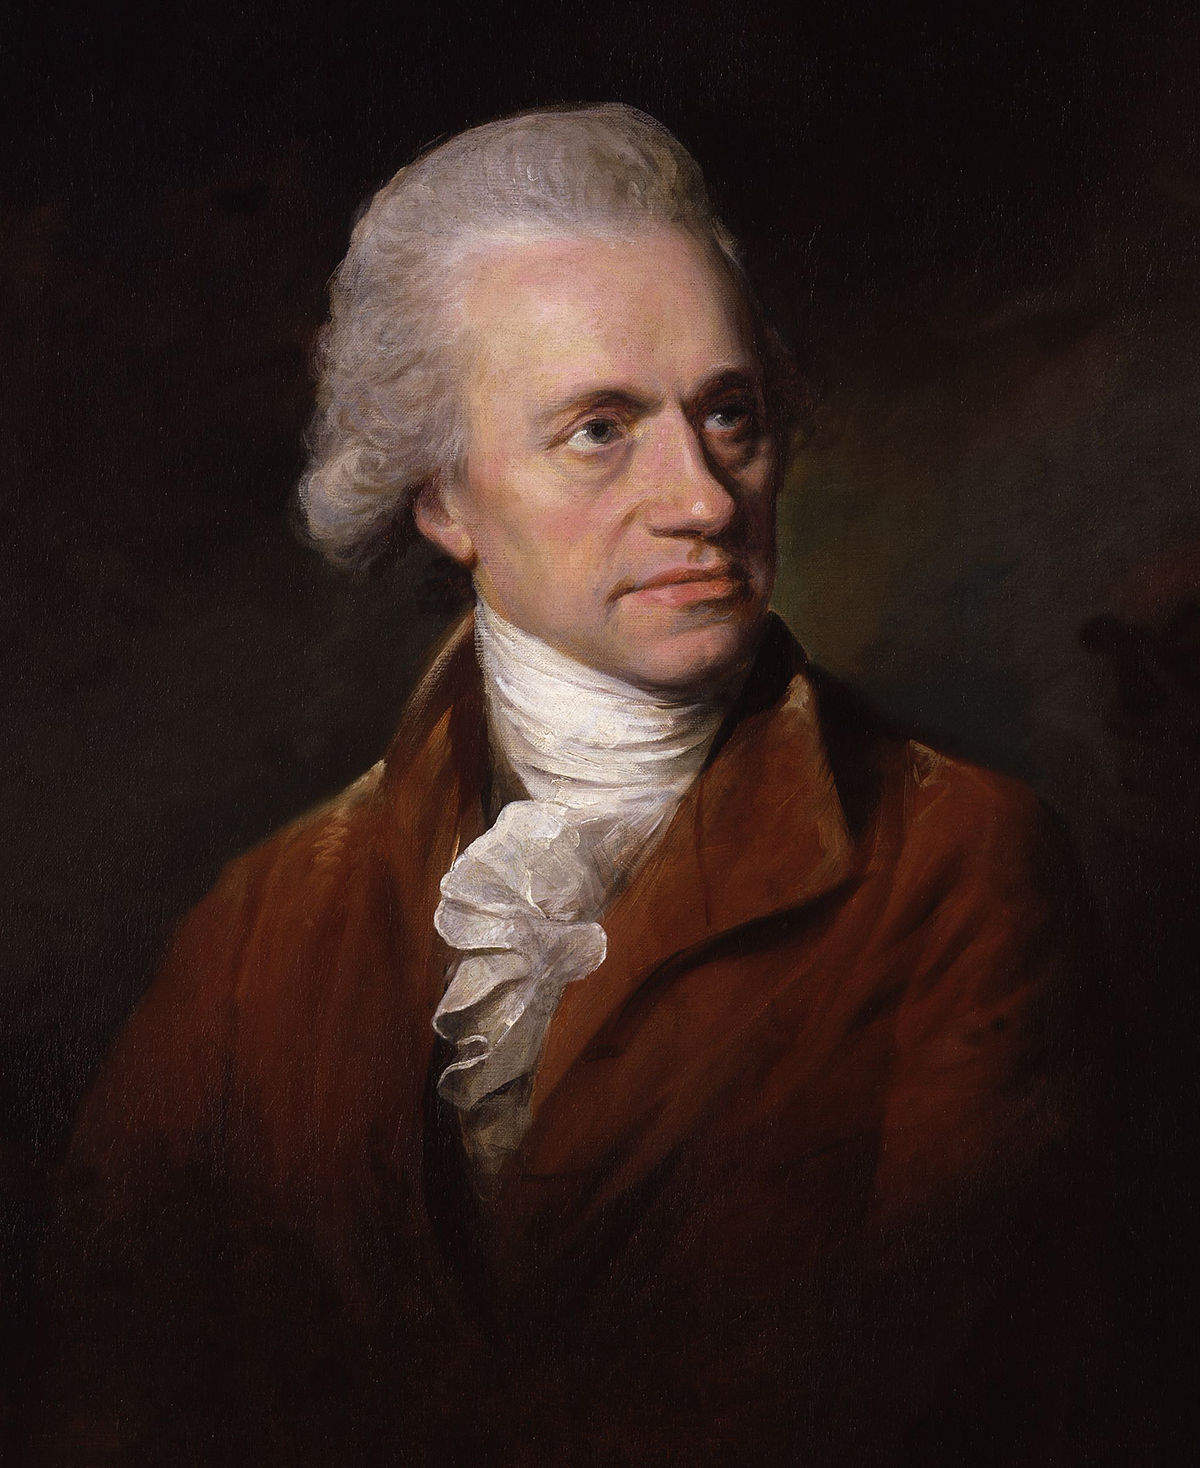 Fallece el astrónomo William Herschel. Fuente |Wikipedia.